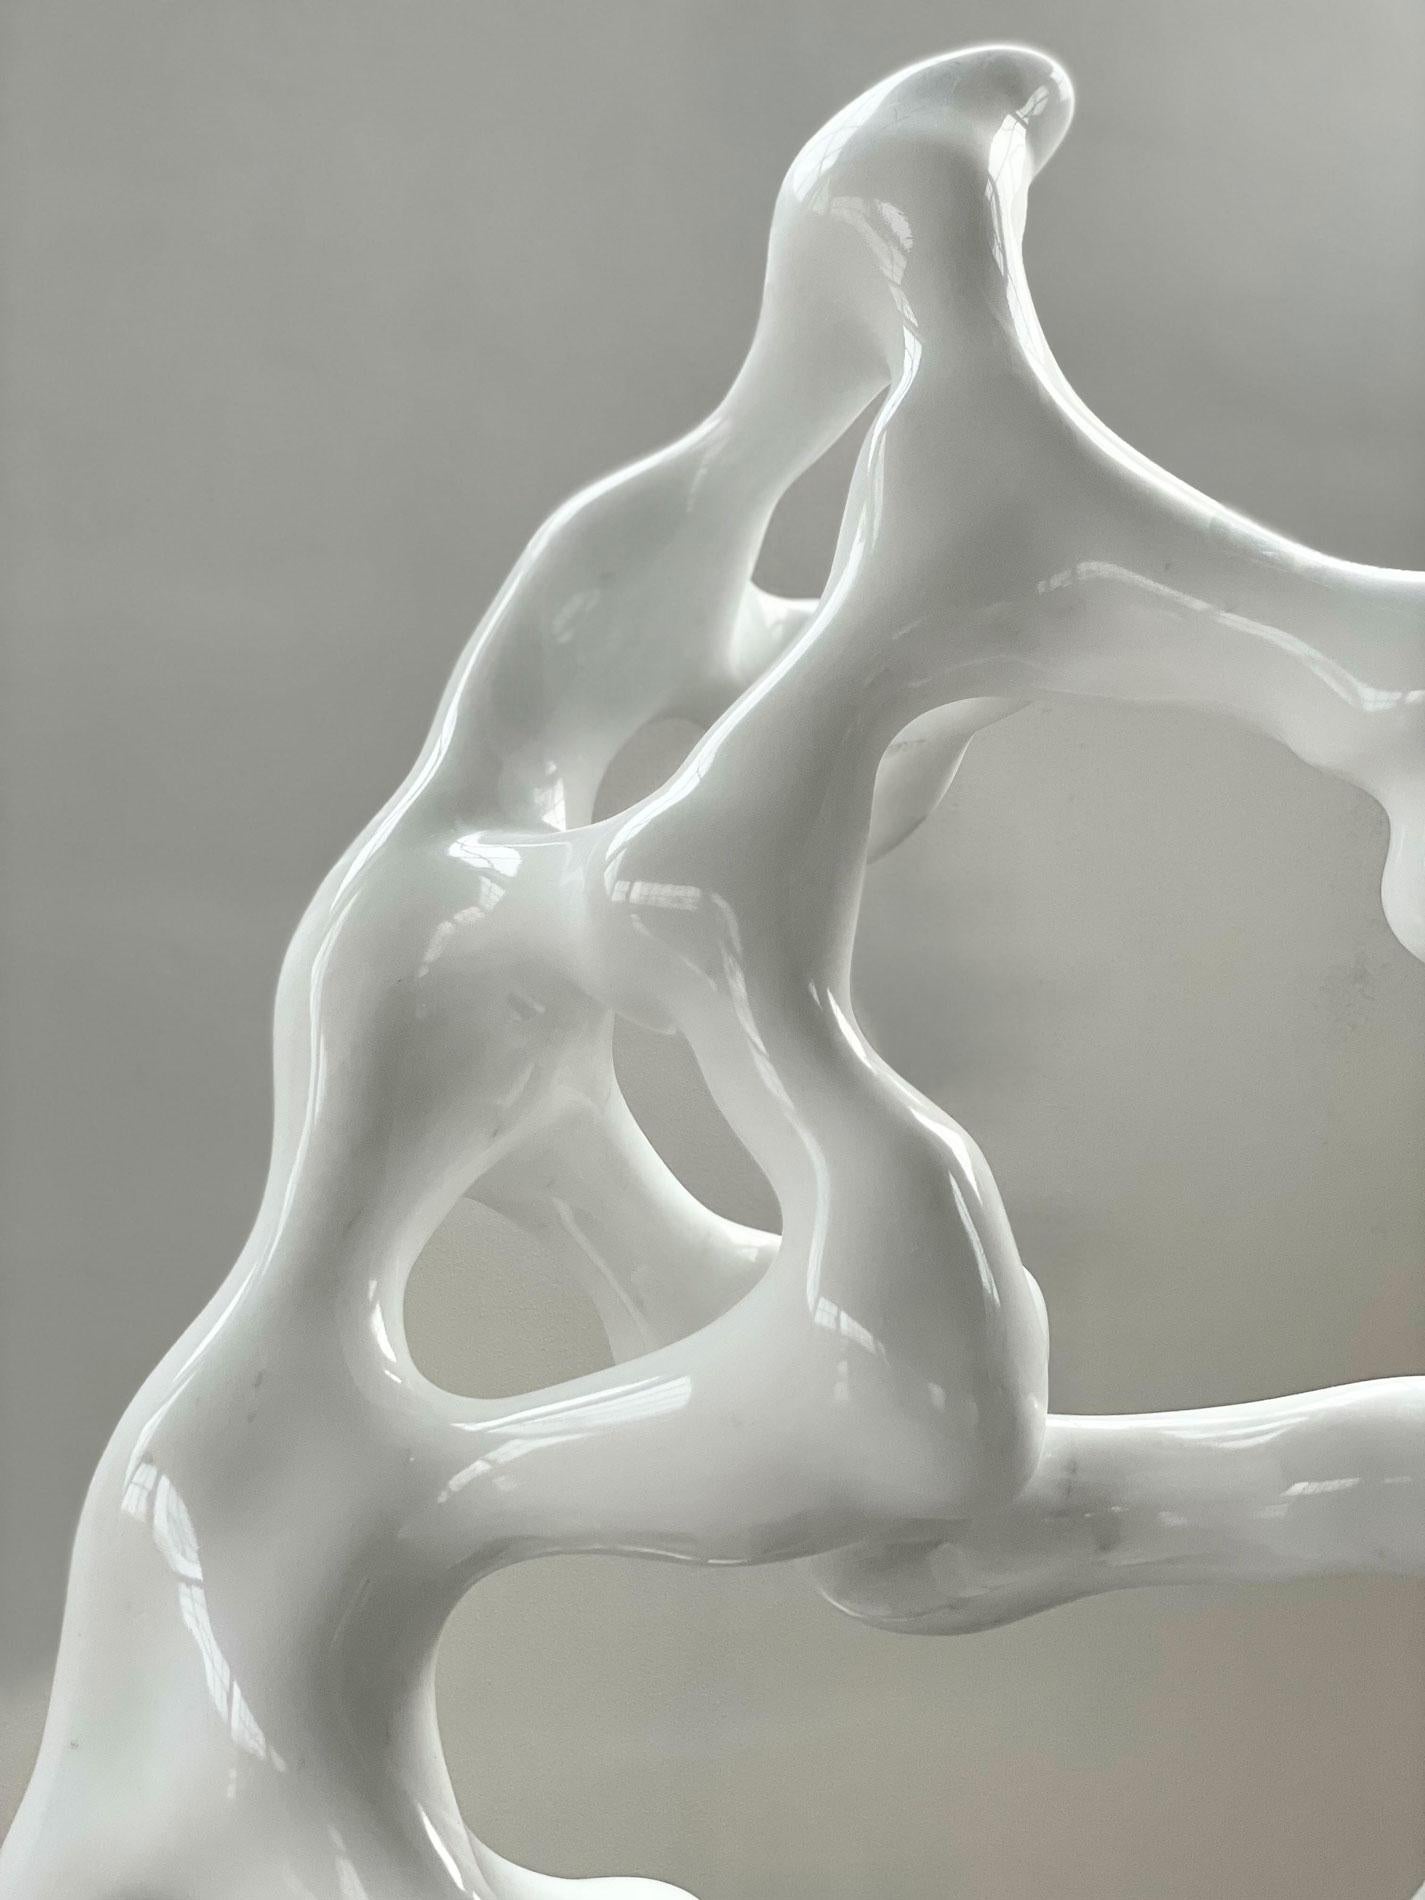 Volto - Sculpture by Szymon Oltarzewski